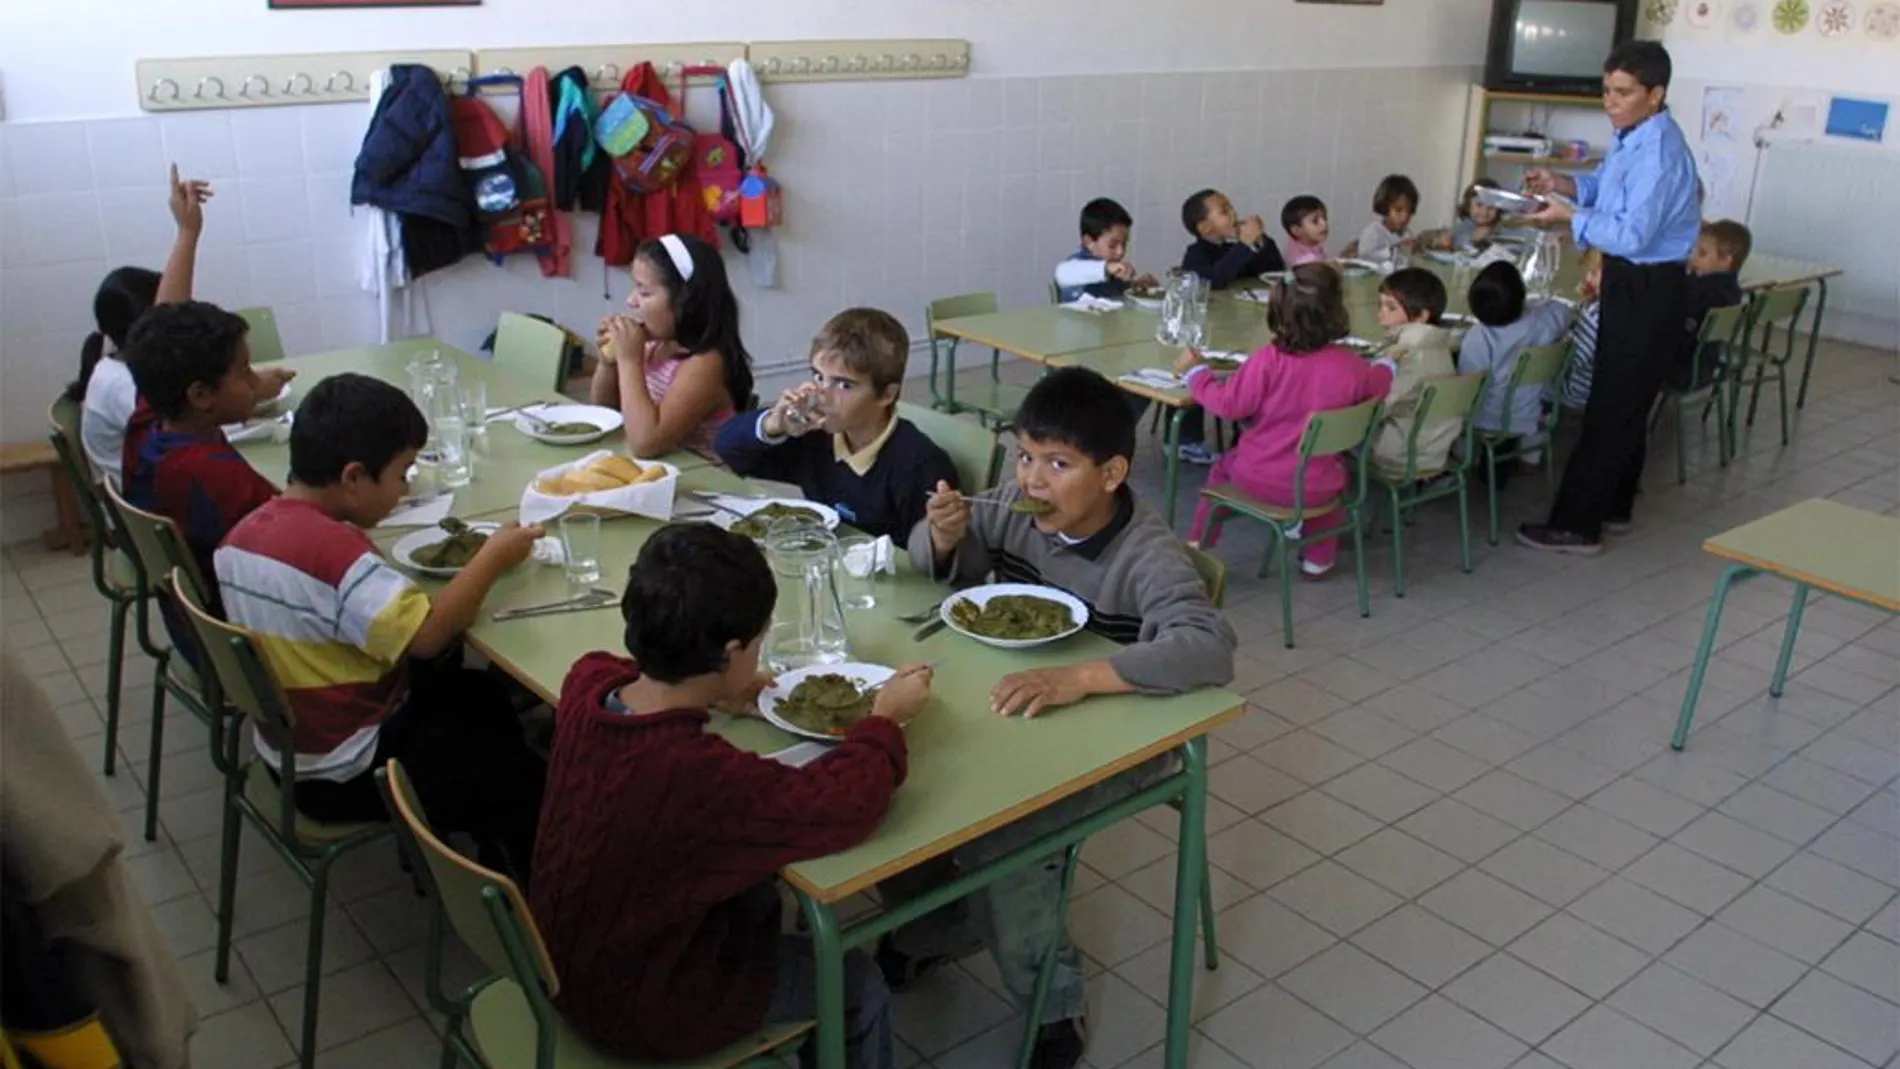 De los 8,5 euros por niños, 5,5 son para alimentación y el resto para actividades lúdicas